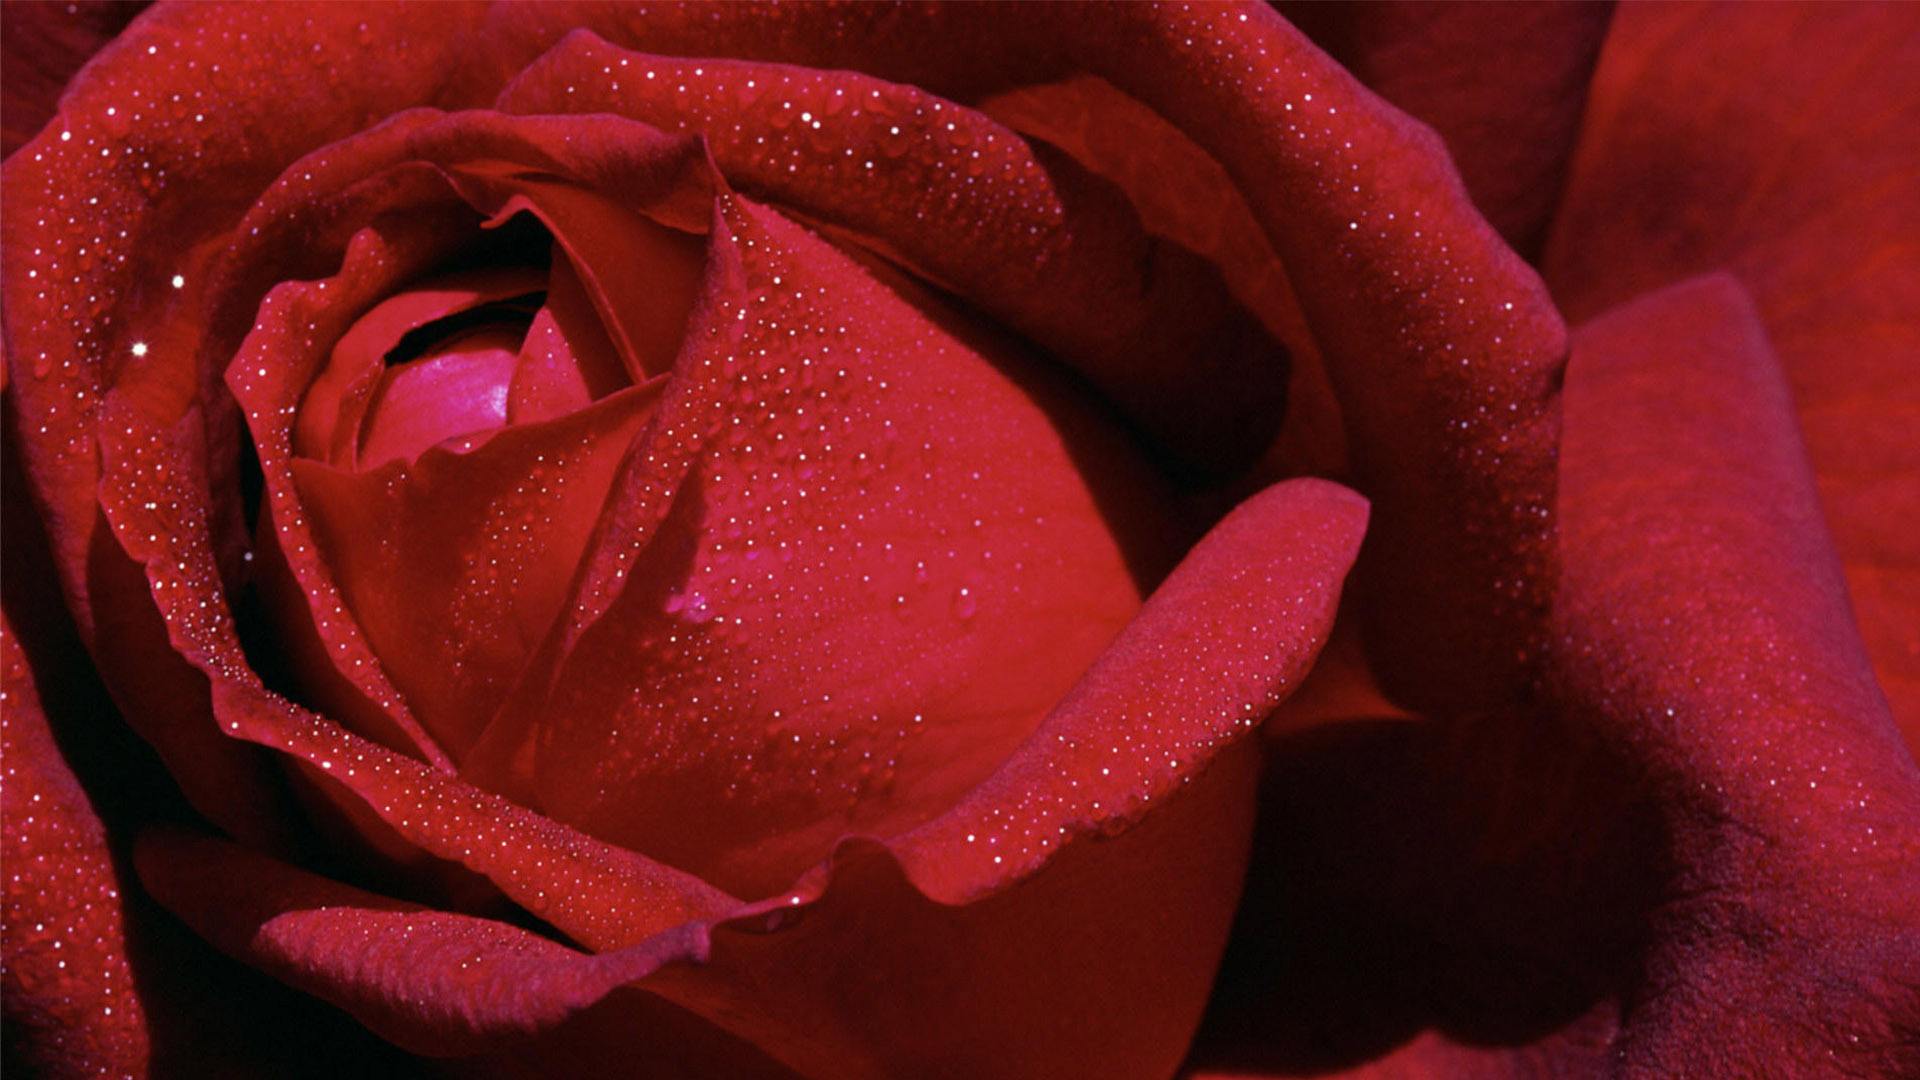 玫瑰花的图片唯美   大朵玫瑰精致清晰图片(2)